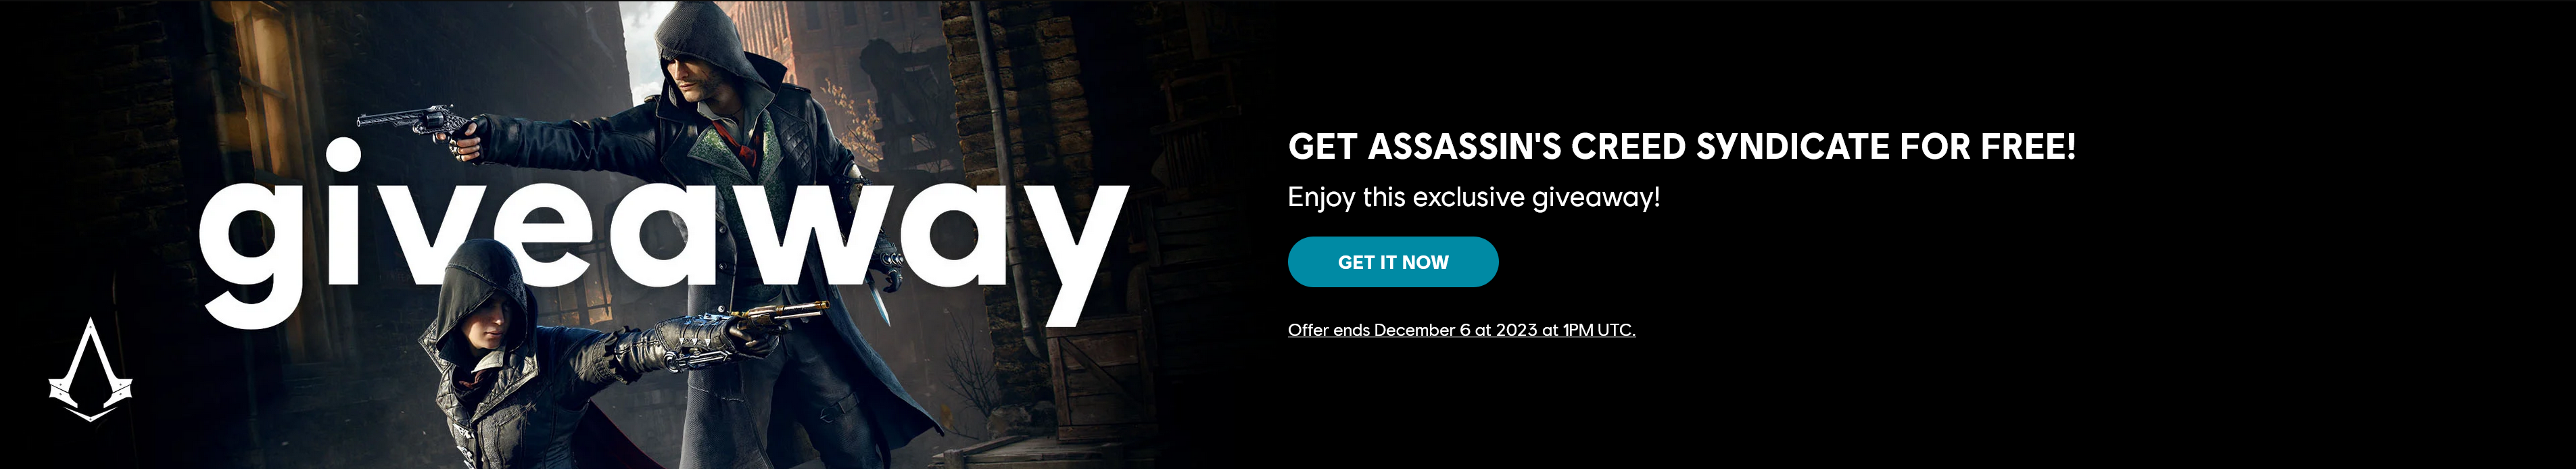 Assassin's Creed: Syndicate, история братьев и сестер-убийц в Лондоне во время промышленной революции, может быть сохранена у Ubisoft бесплатно.